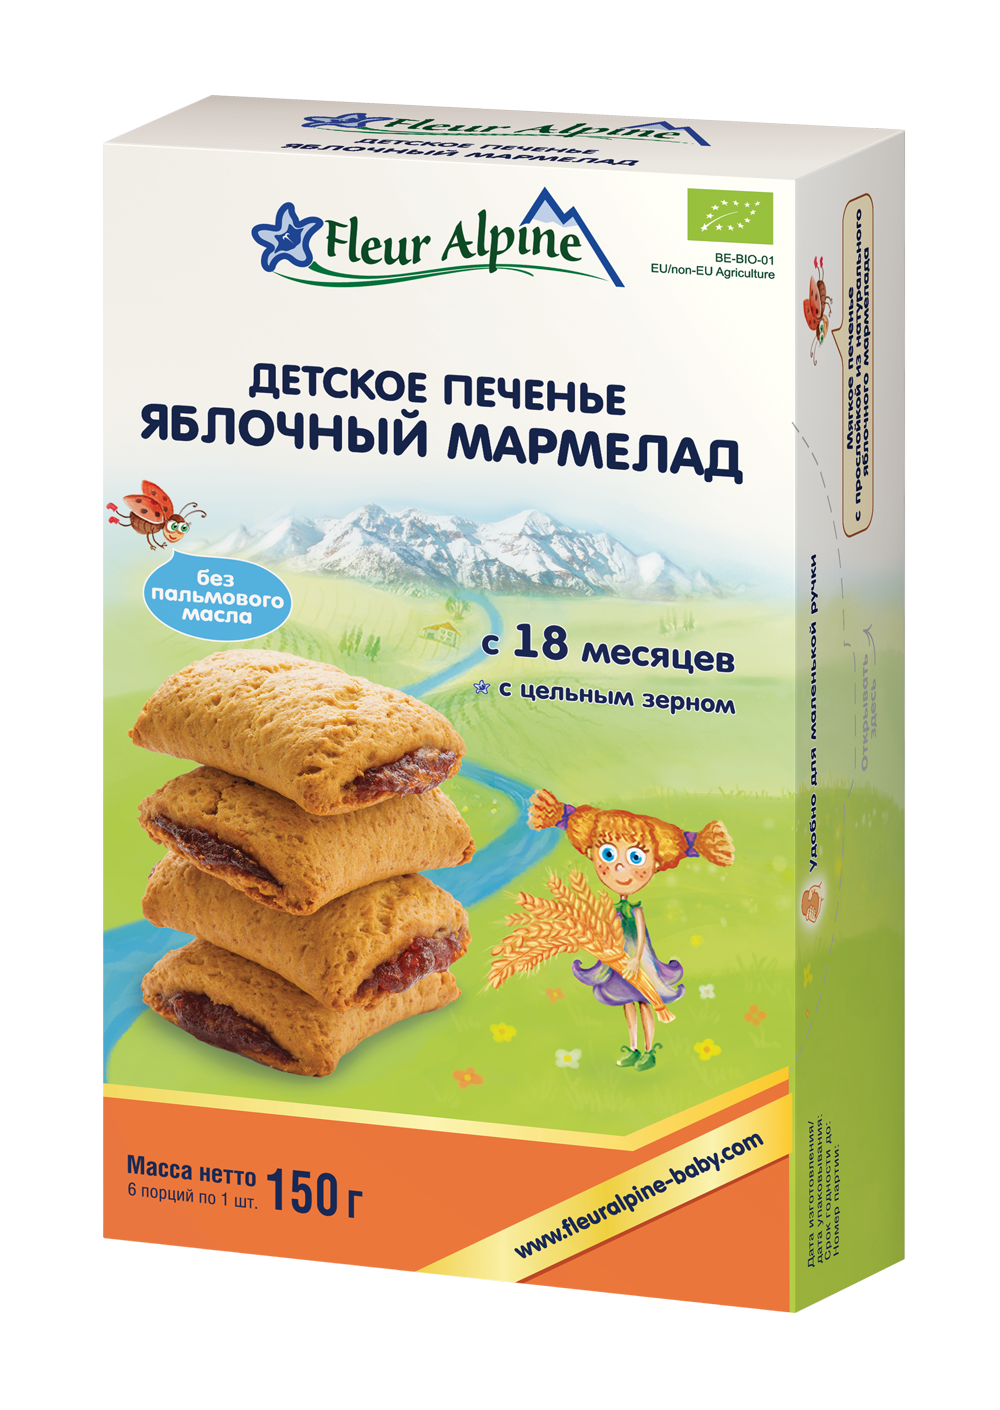 Детское печенье FLEUR ALPINE Яблочный мармелад, 18 мес